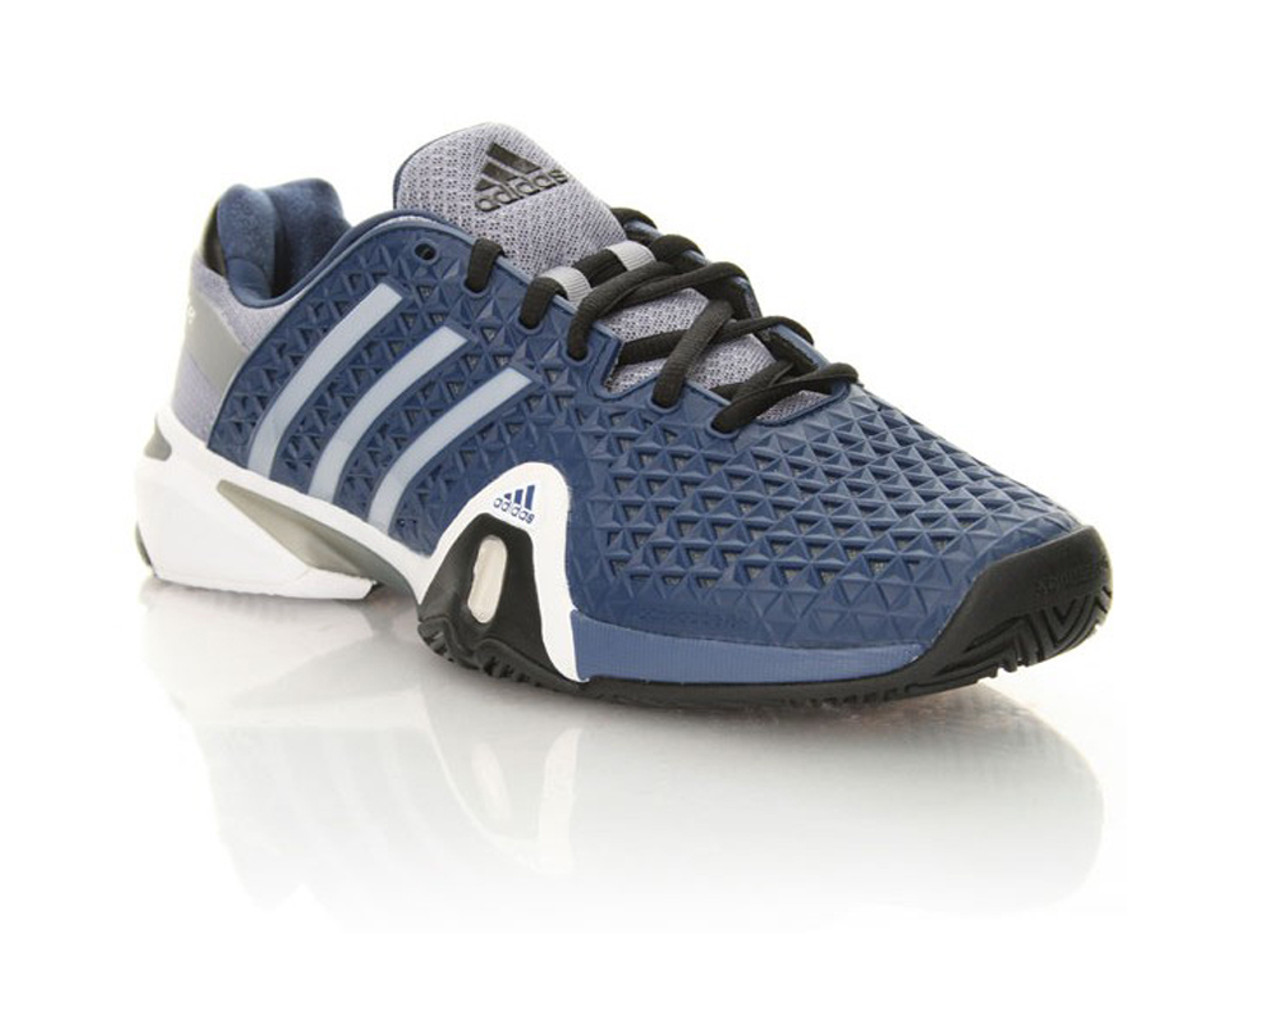 Adidas Men's Adipower Barricade 8+ Tennis Shoes - Blue | Discount Adidas  Men's Athletic Shoes & More - Shoolu.com | Shoolu.com